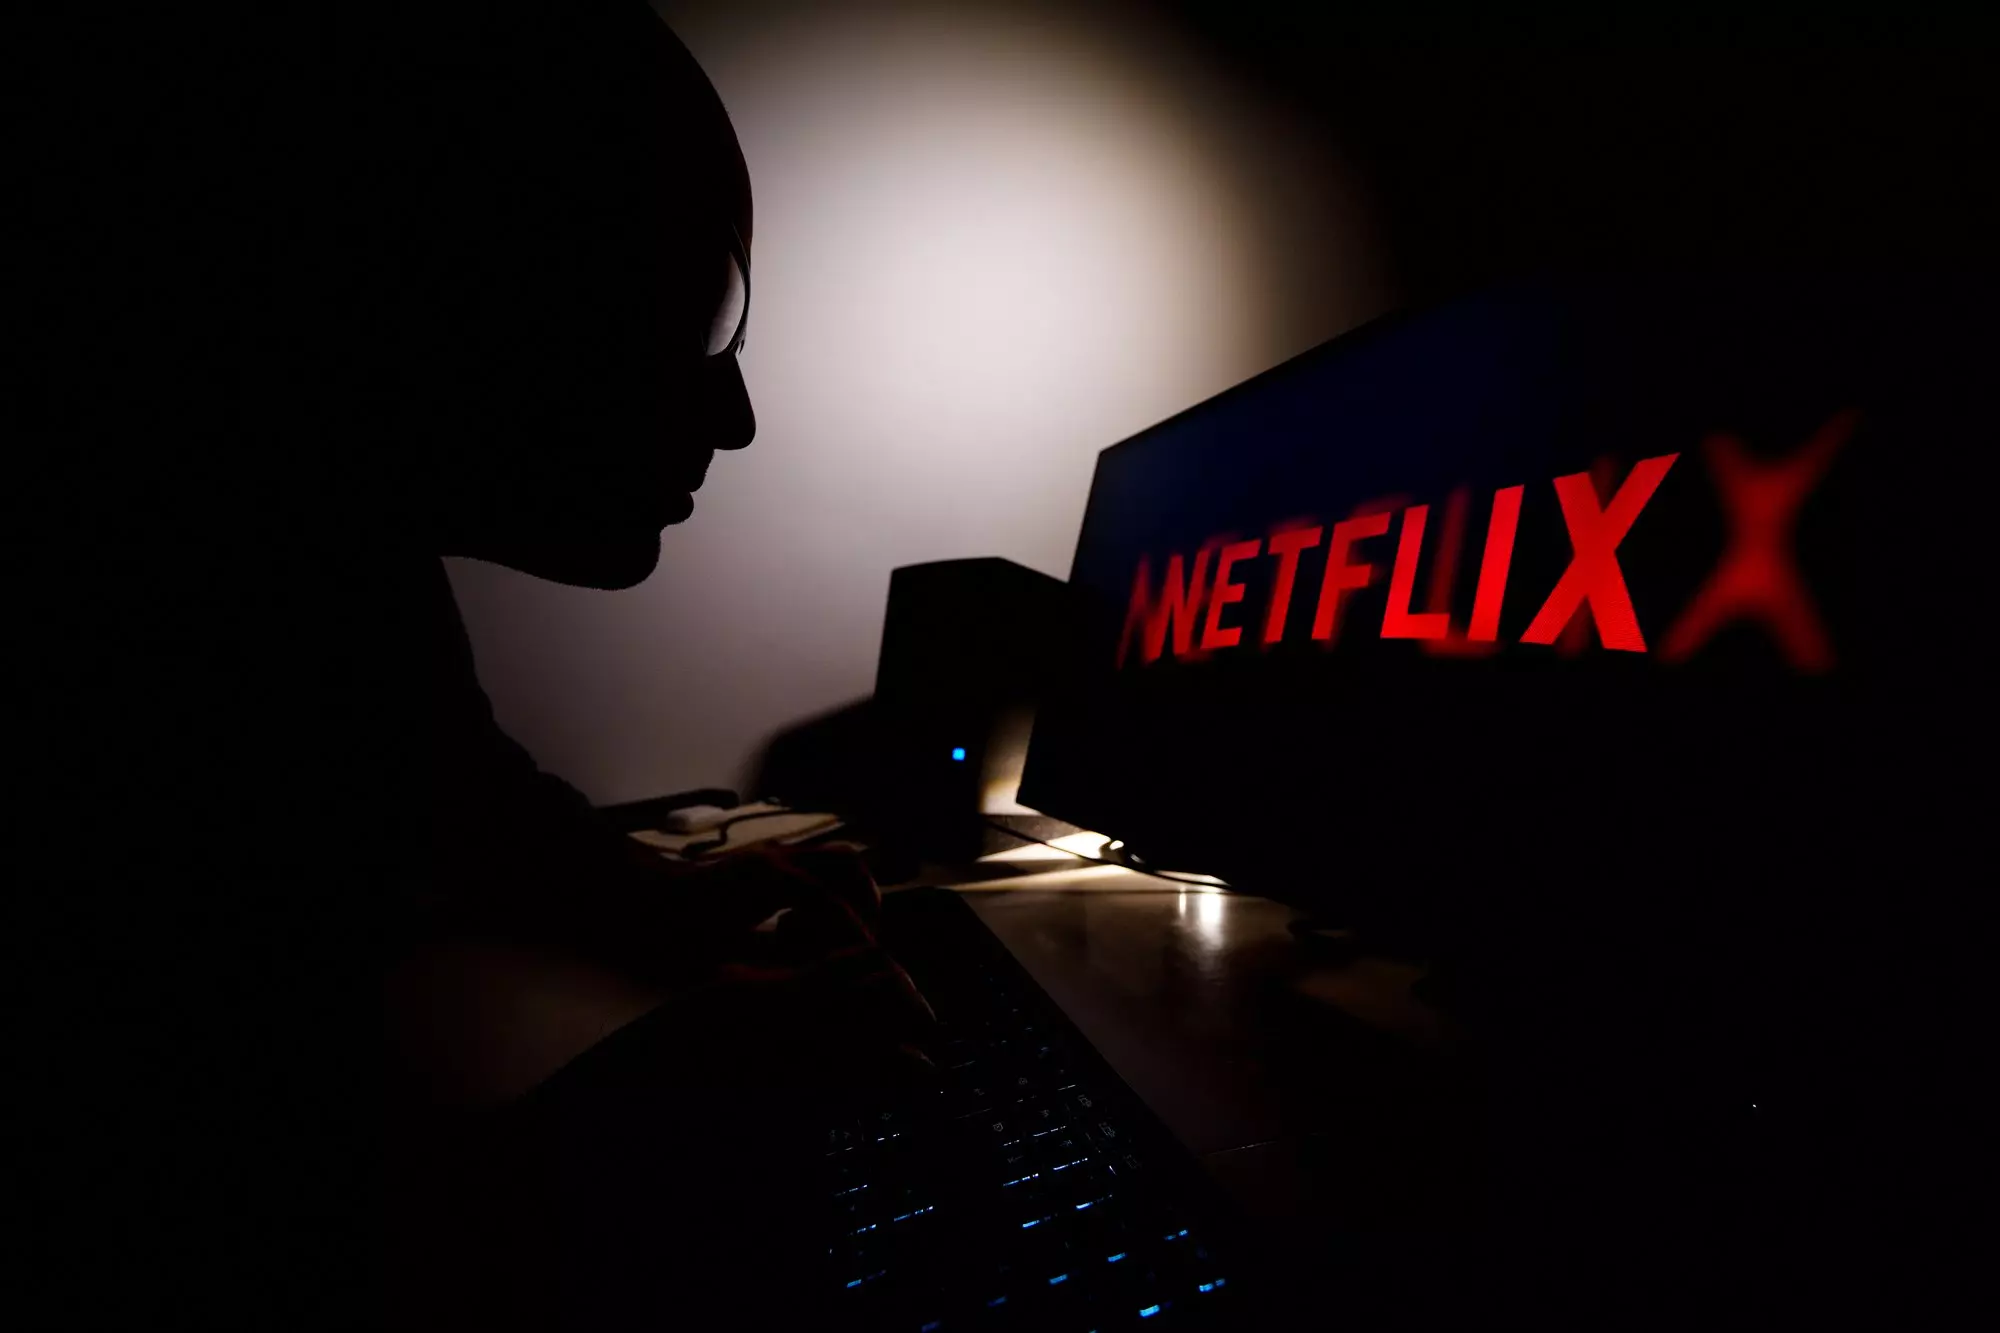 Perbe fogják a befektetők a Netflixet